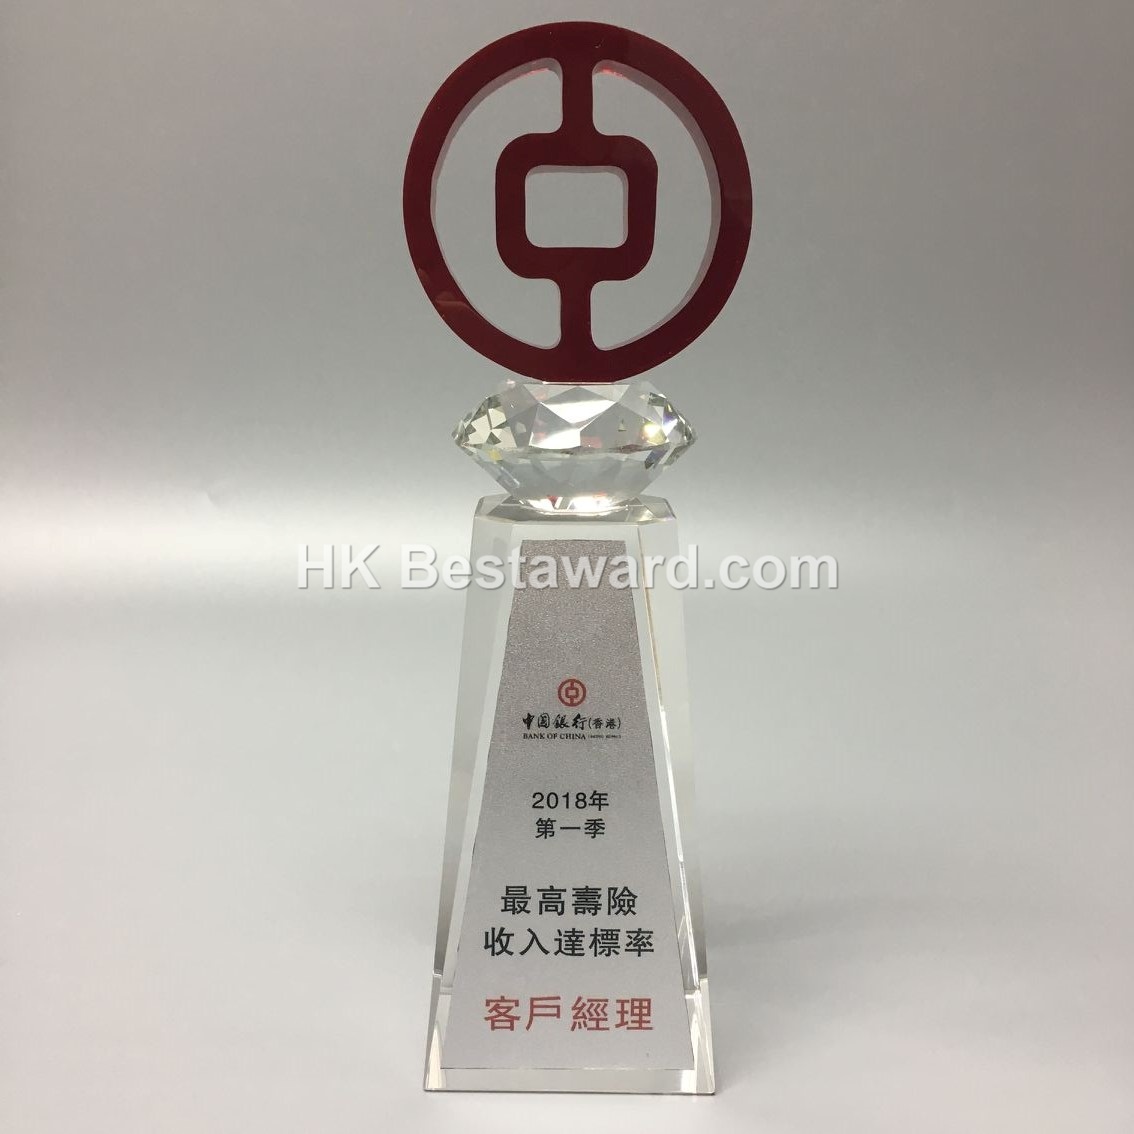 中國銀行logo造型水晶獎座